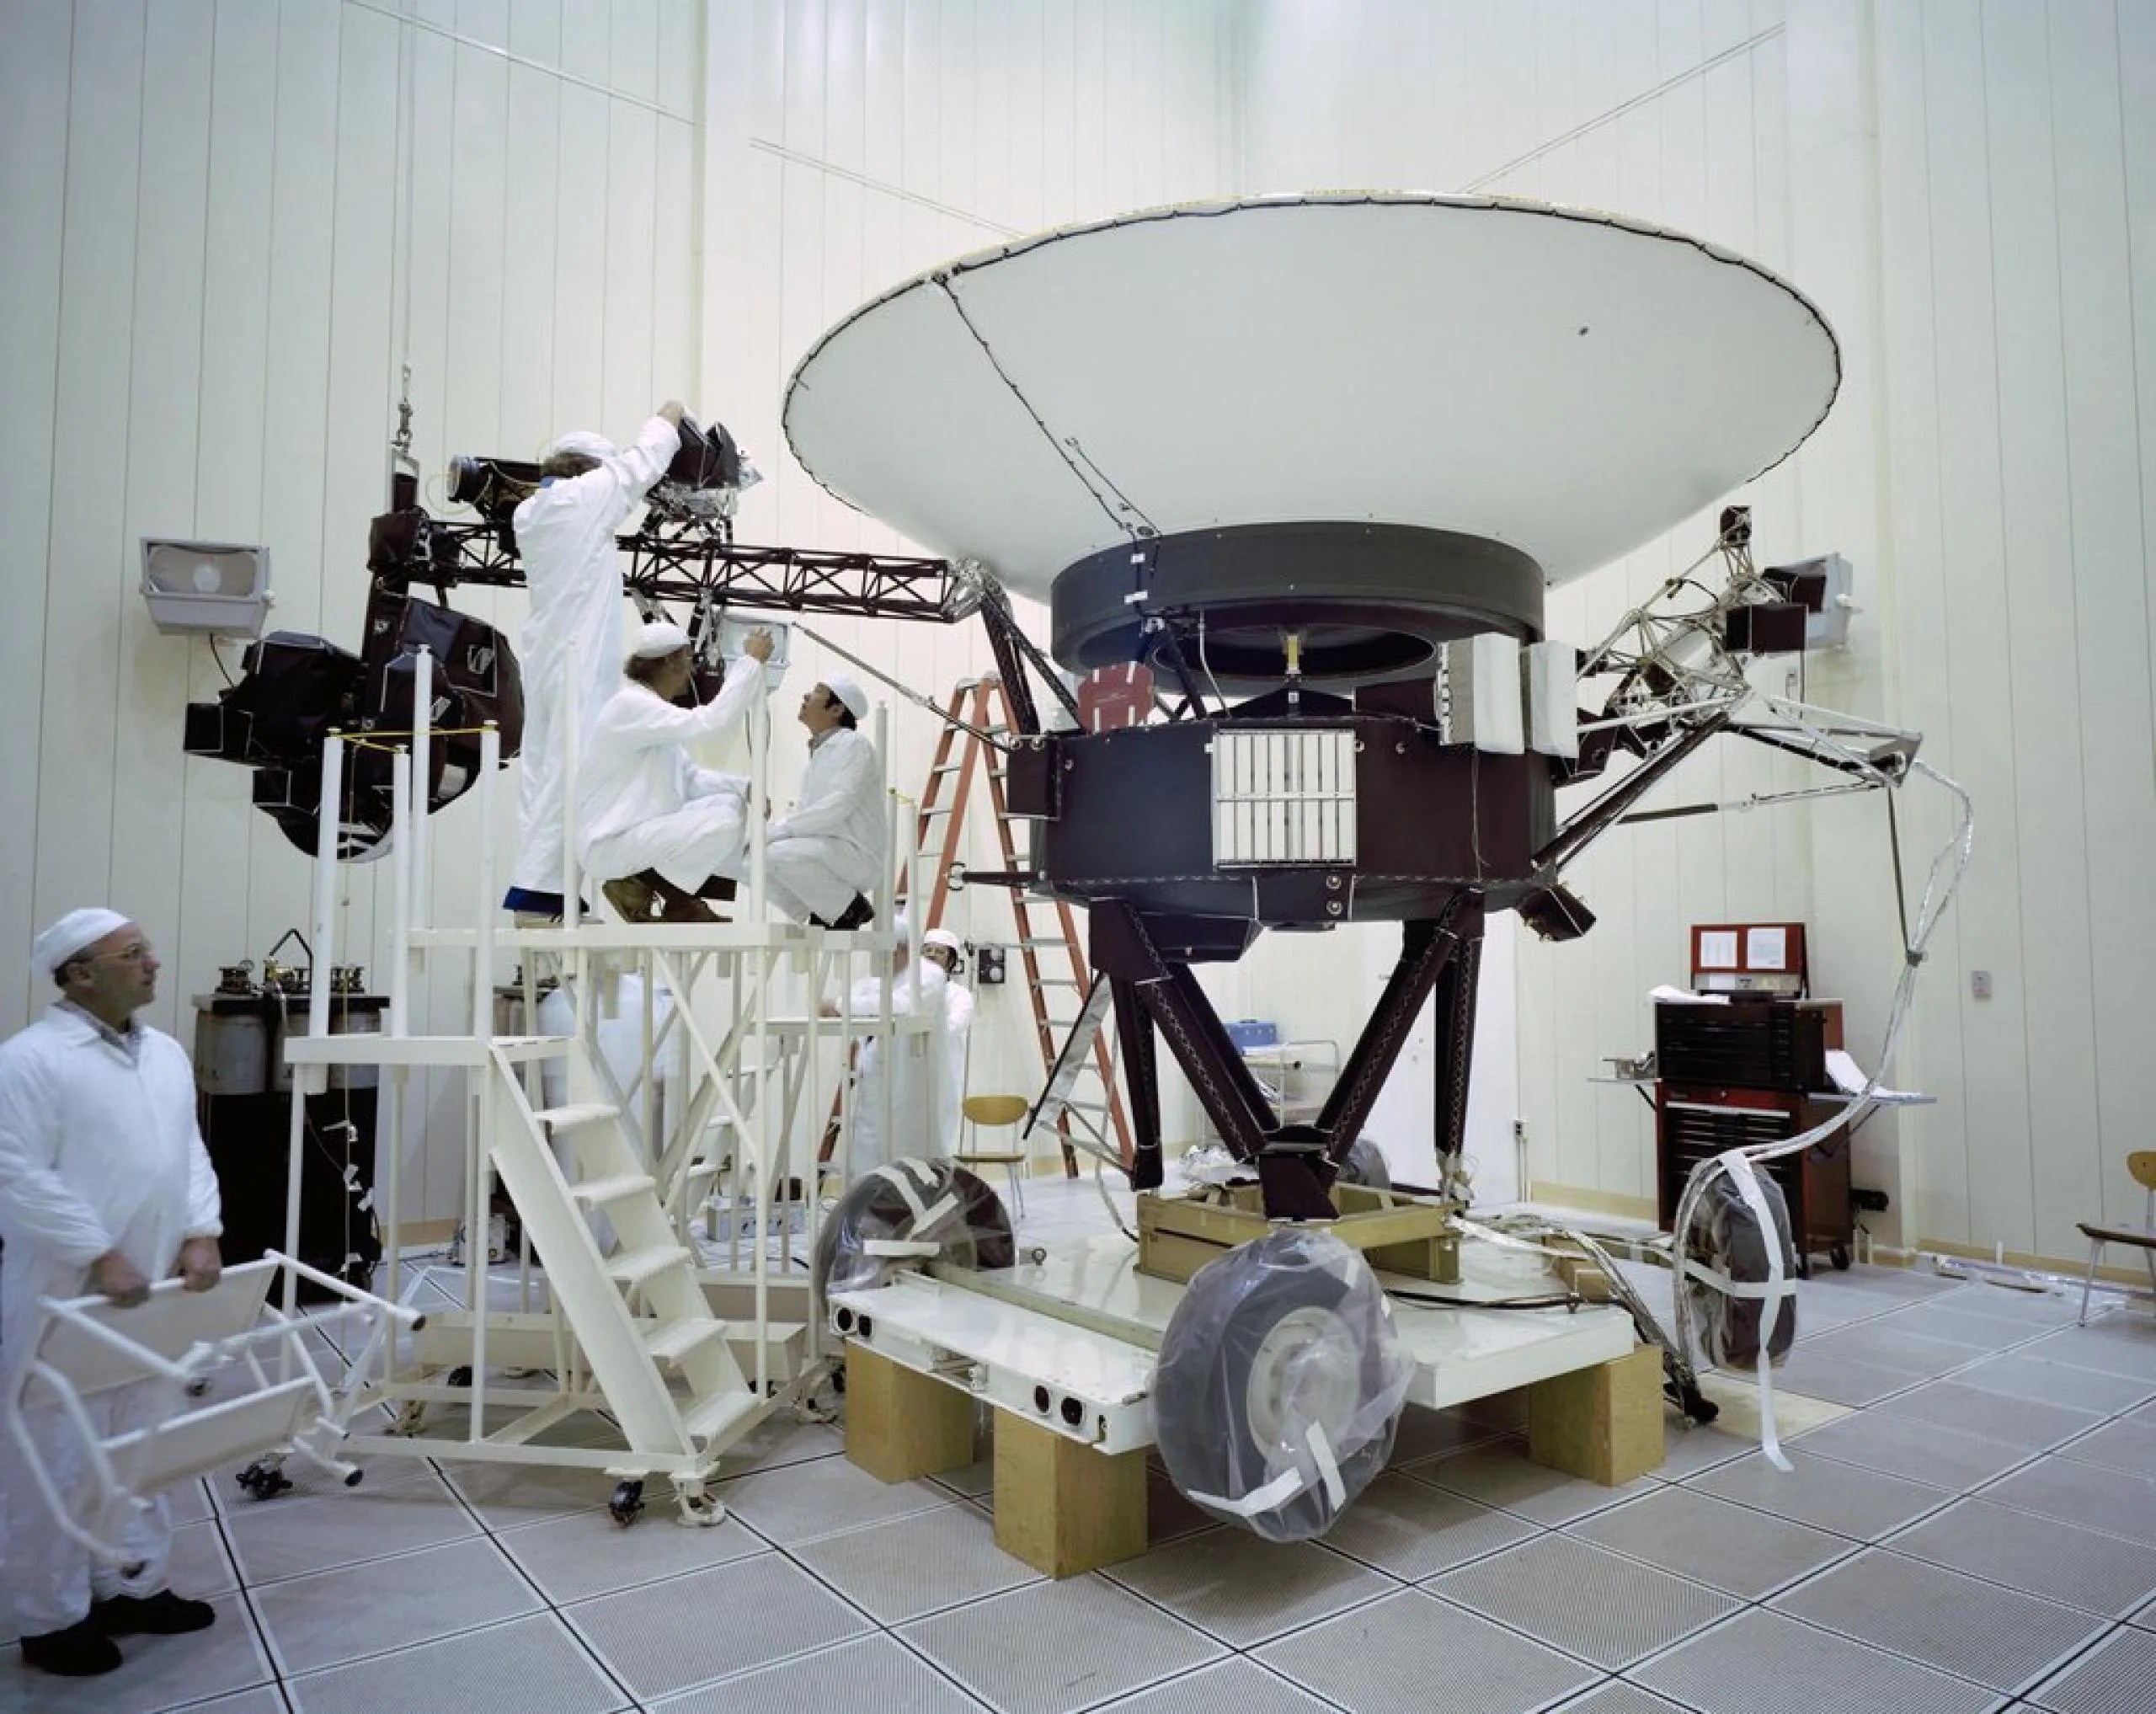 Esta imagen de archivo tomada en el Laboratorio de Propulsión a Chorro (JPL) de la NASA el 23 de marzo de 1977, muestra a los ingenieros preparando la nave espacial Voyager 2 antes de su lanzamiento ese mismo año. Crédito: NASA/JPL-Caltech.